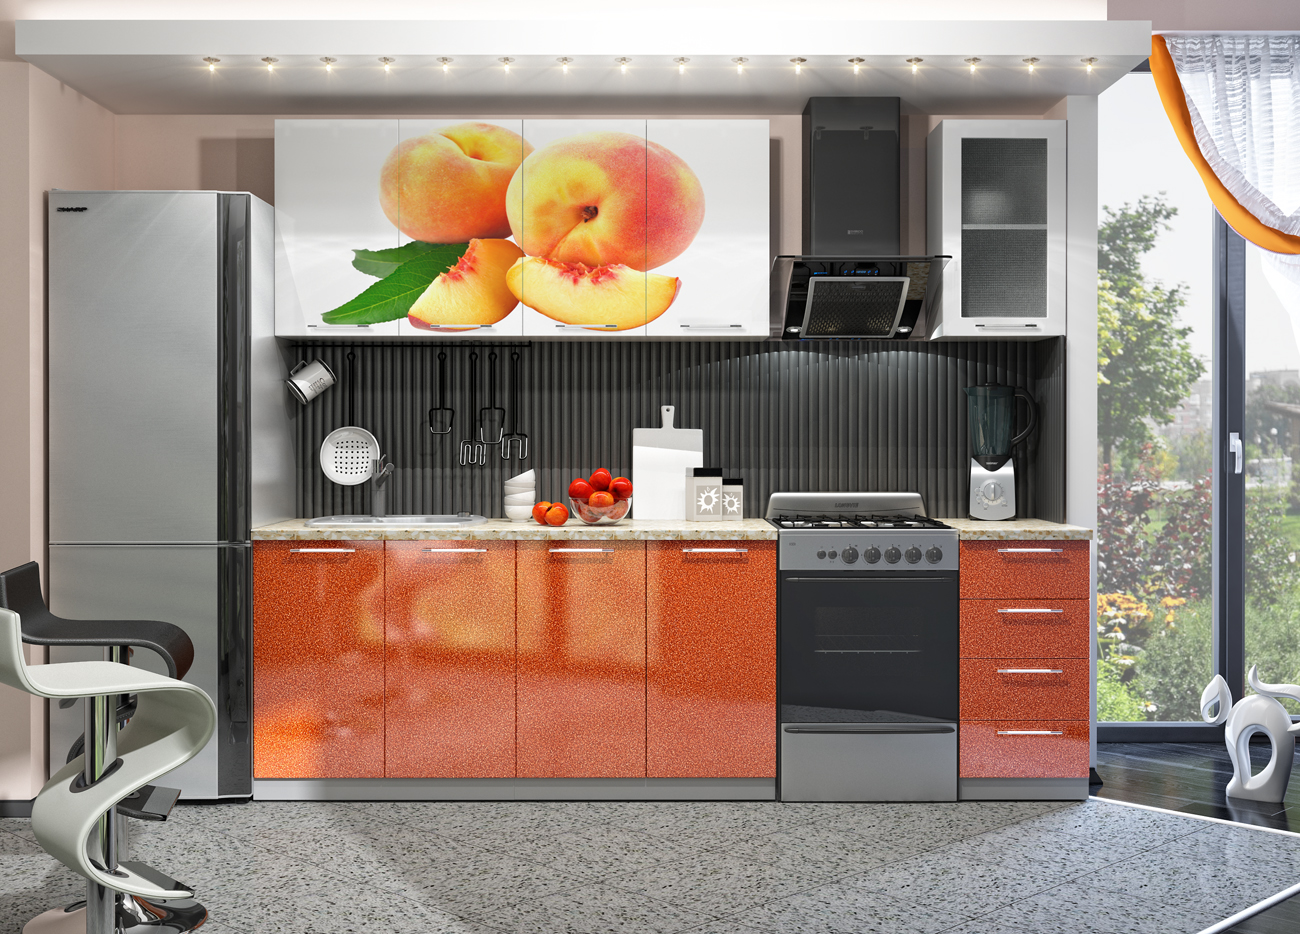 салон мебели зеленый апельсин